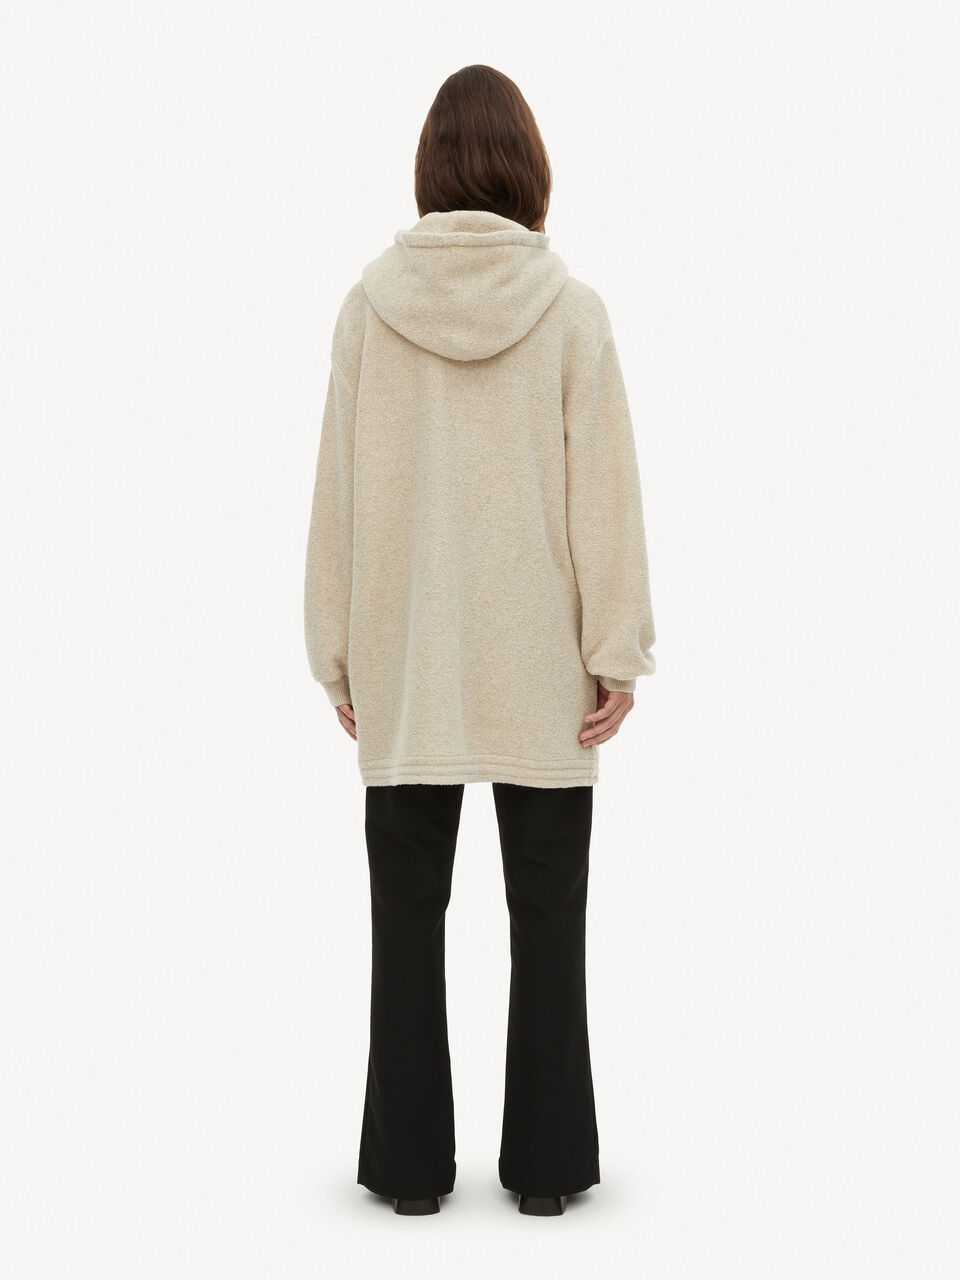 Terry hoodie - Buy Knitwear online